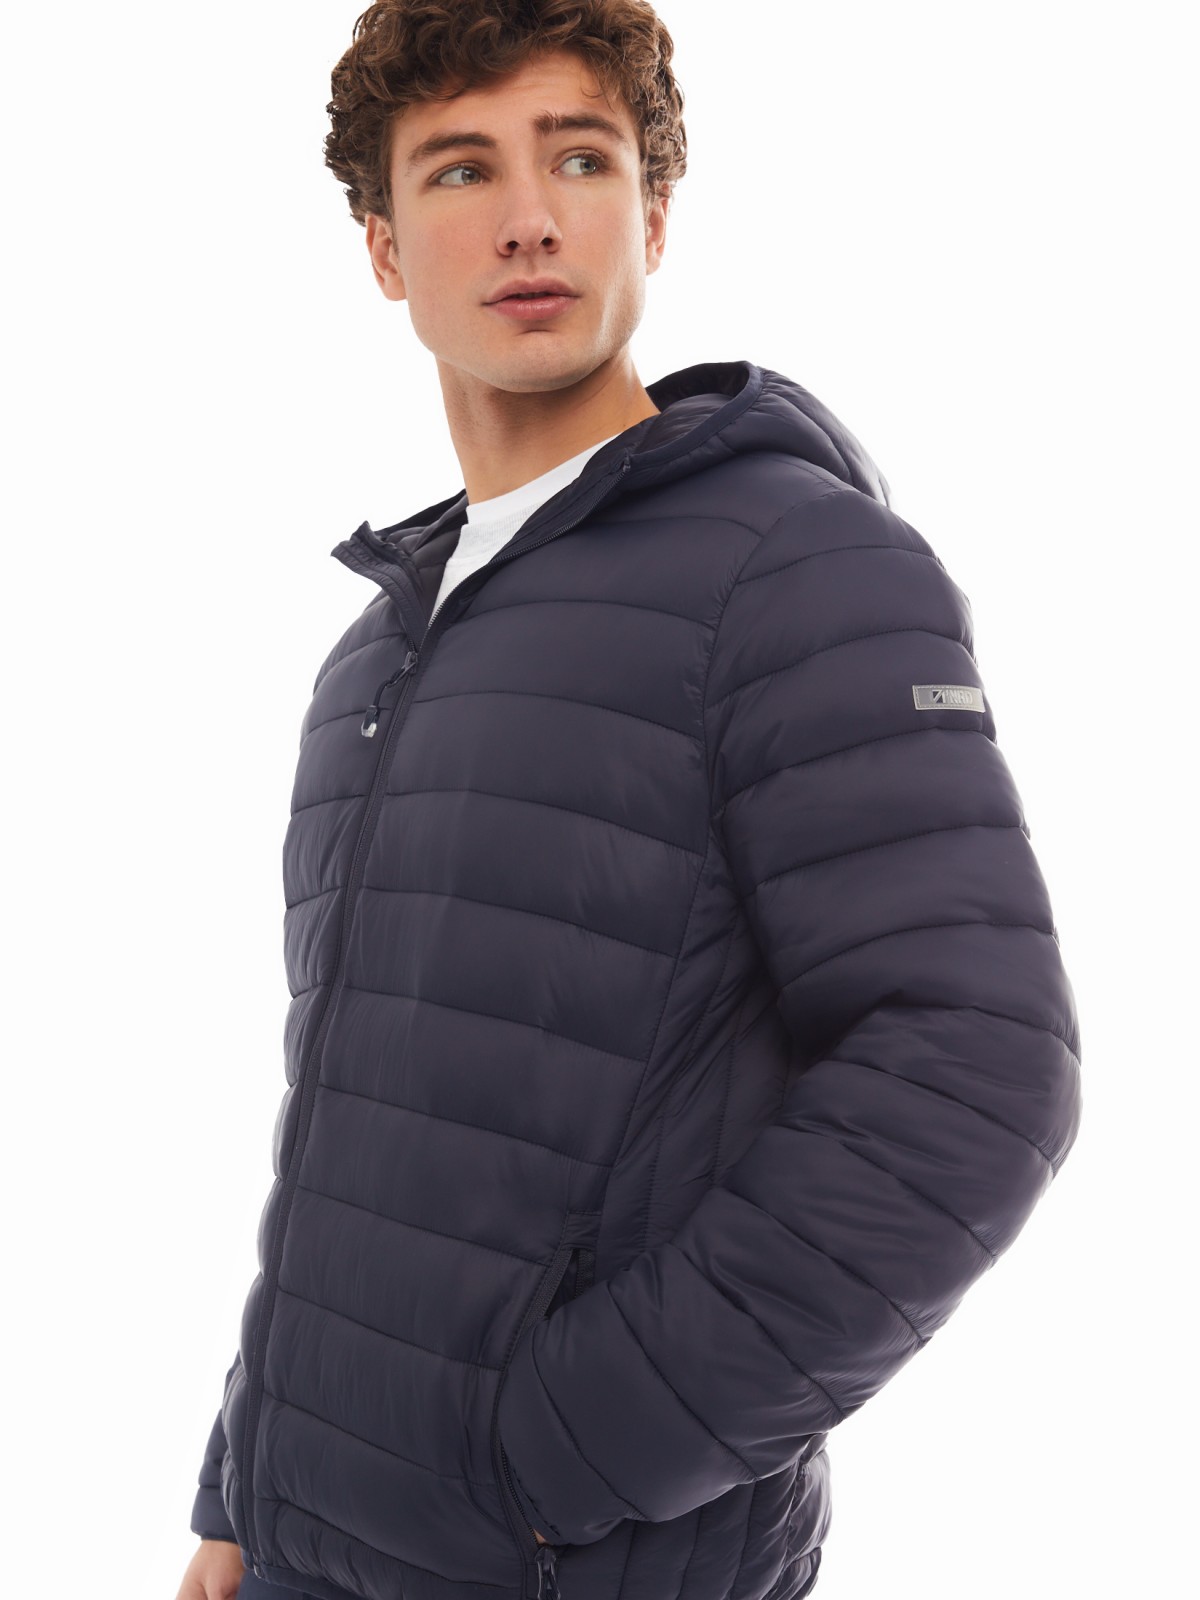 Лёгкая утеплённая стёганая куртка на молнии с капюшоном zolla 01412512N074, цвет синий, размер M - фото 3